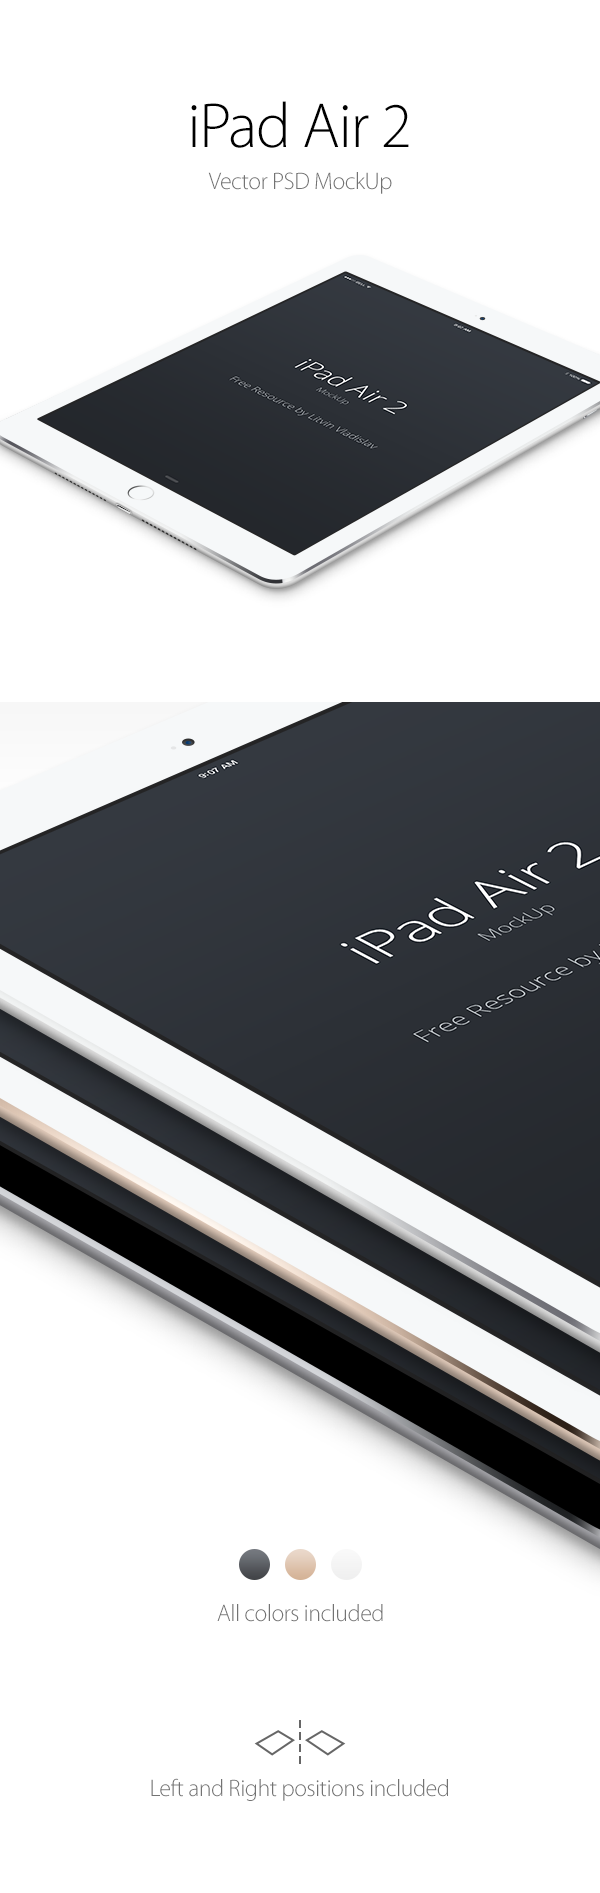 iPad-Air-2-Perspective-MockUp-600